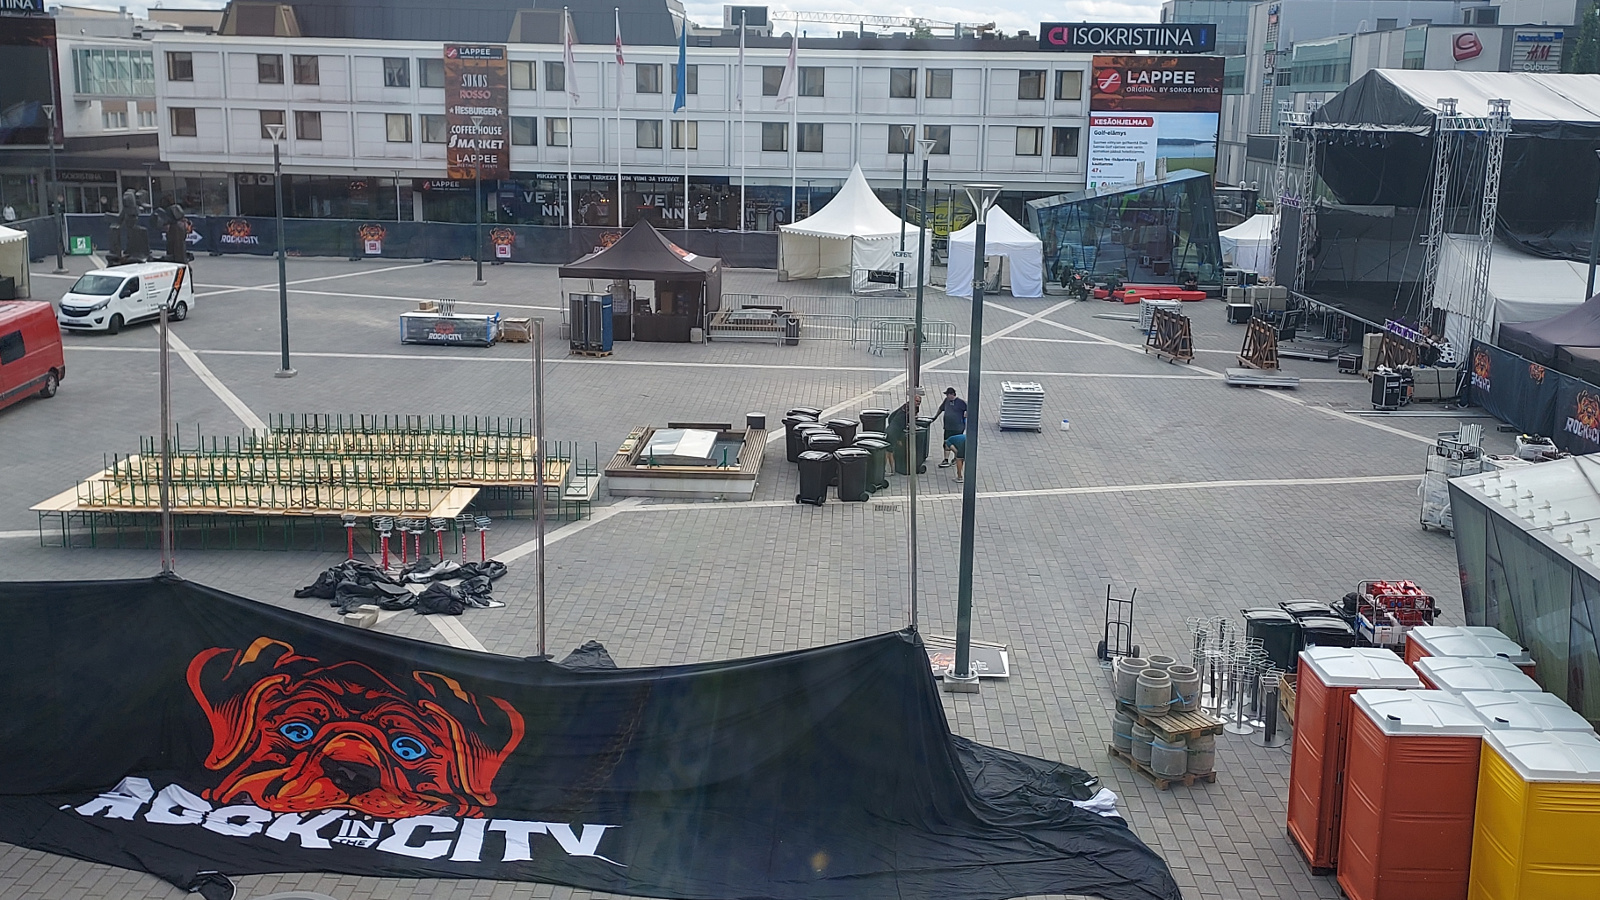 Kuvassa on Lappeerannan kansalaistori, jota valmistellaan Rock In The City -festivaalia varten. Etualalla näkyy telttoja ja oikealla näkyy esiintymislavaa.